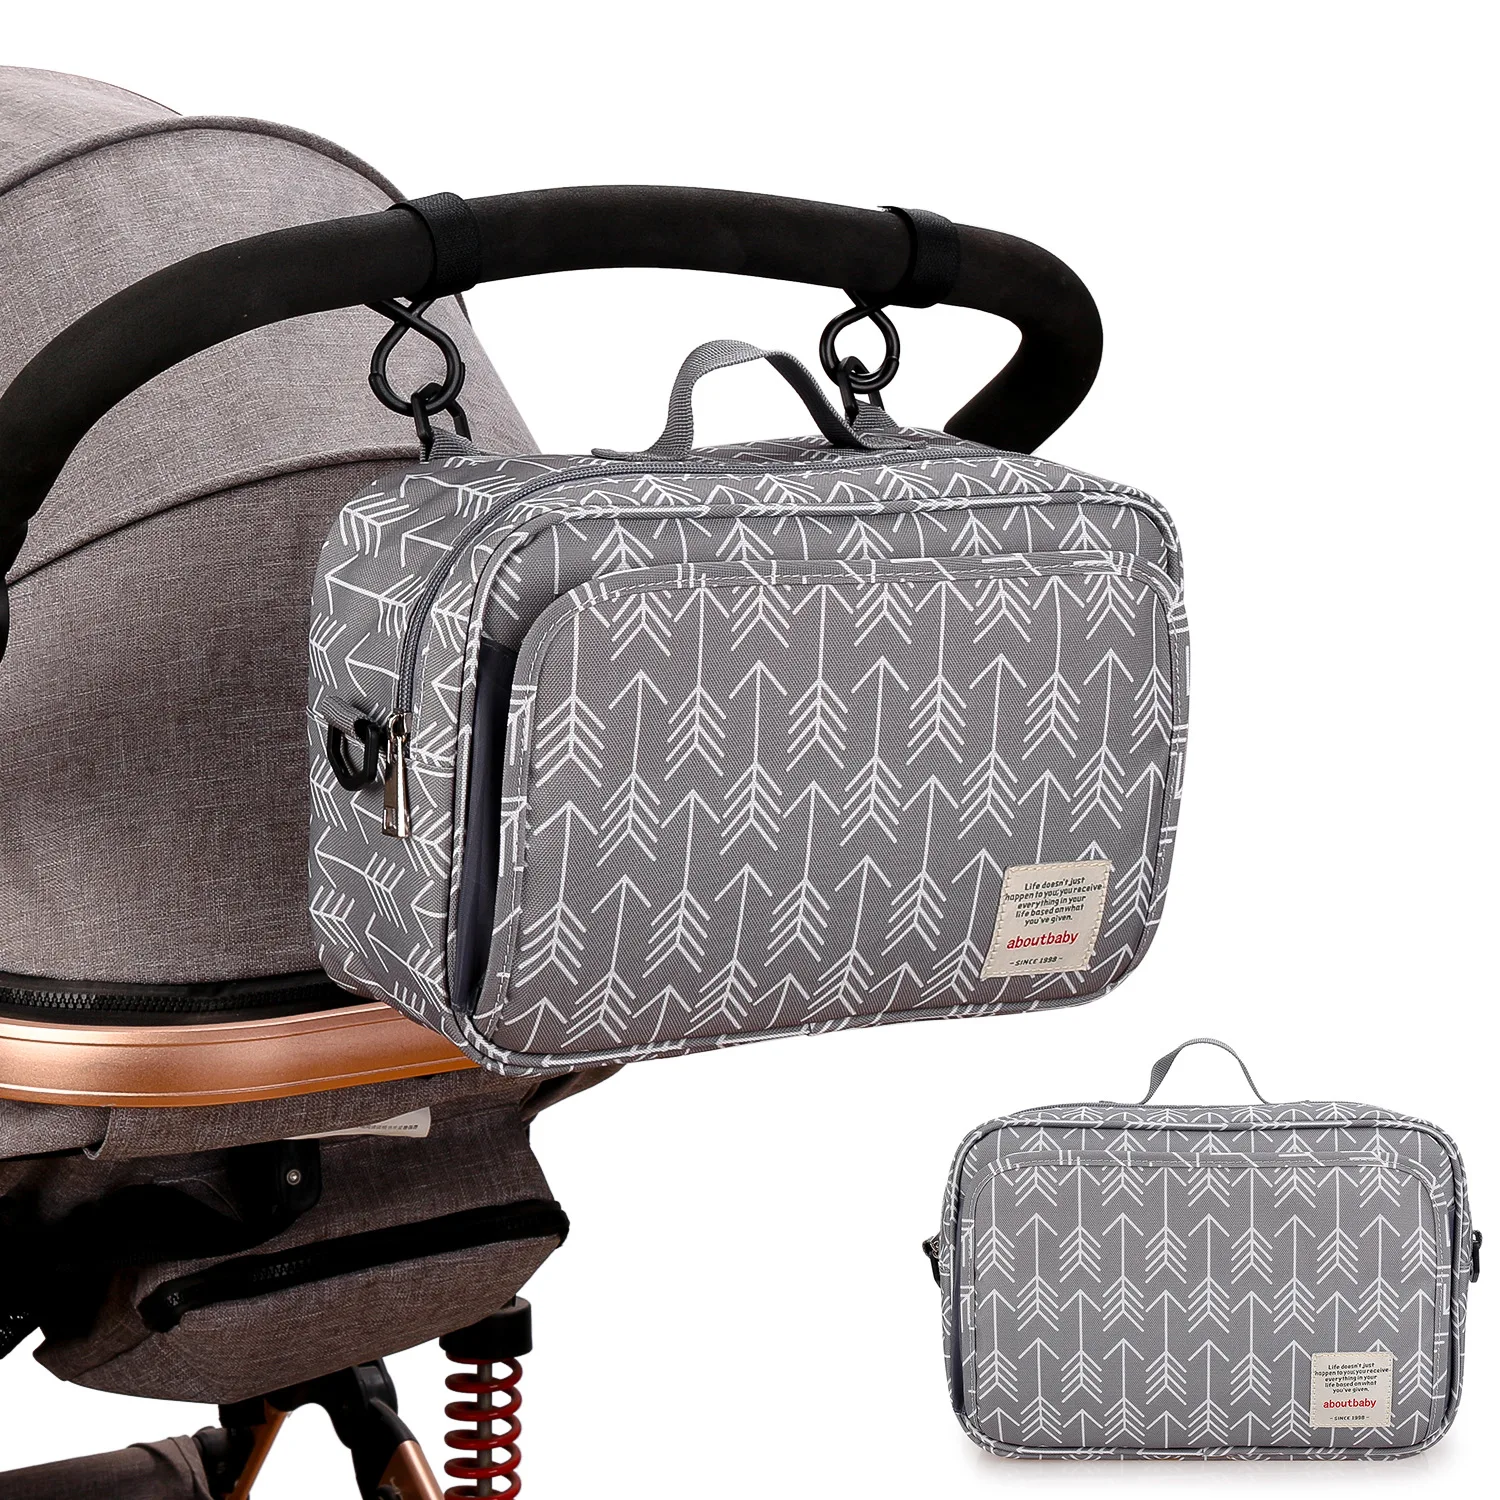 ZK50 Waterproof Stroller Stroller Bag Storage Stroller Hanging Bag Diaper Bag Baby Outing Mommy Bag